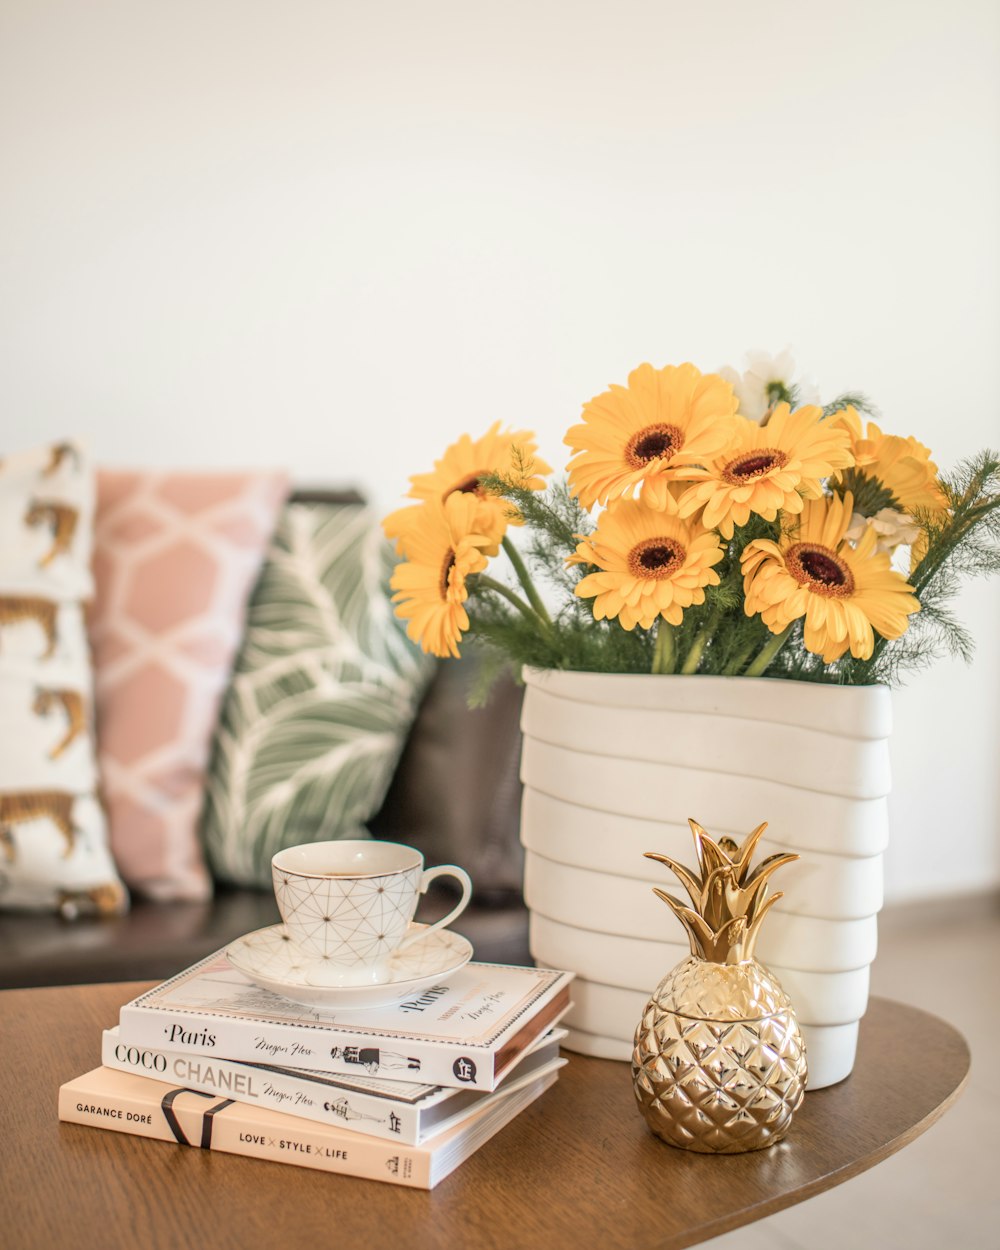 白い陶器の花瓶に黄色い花